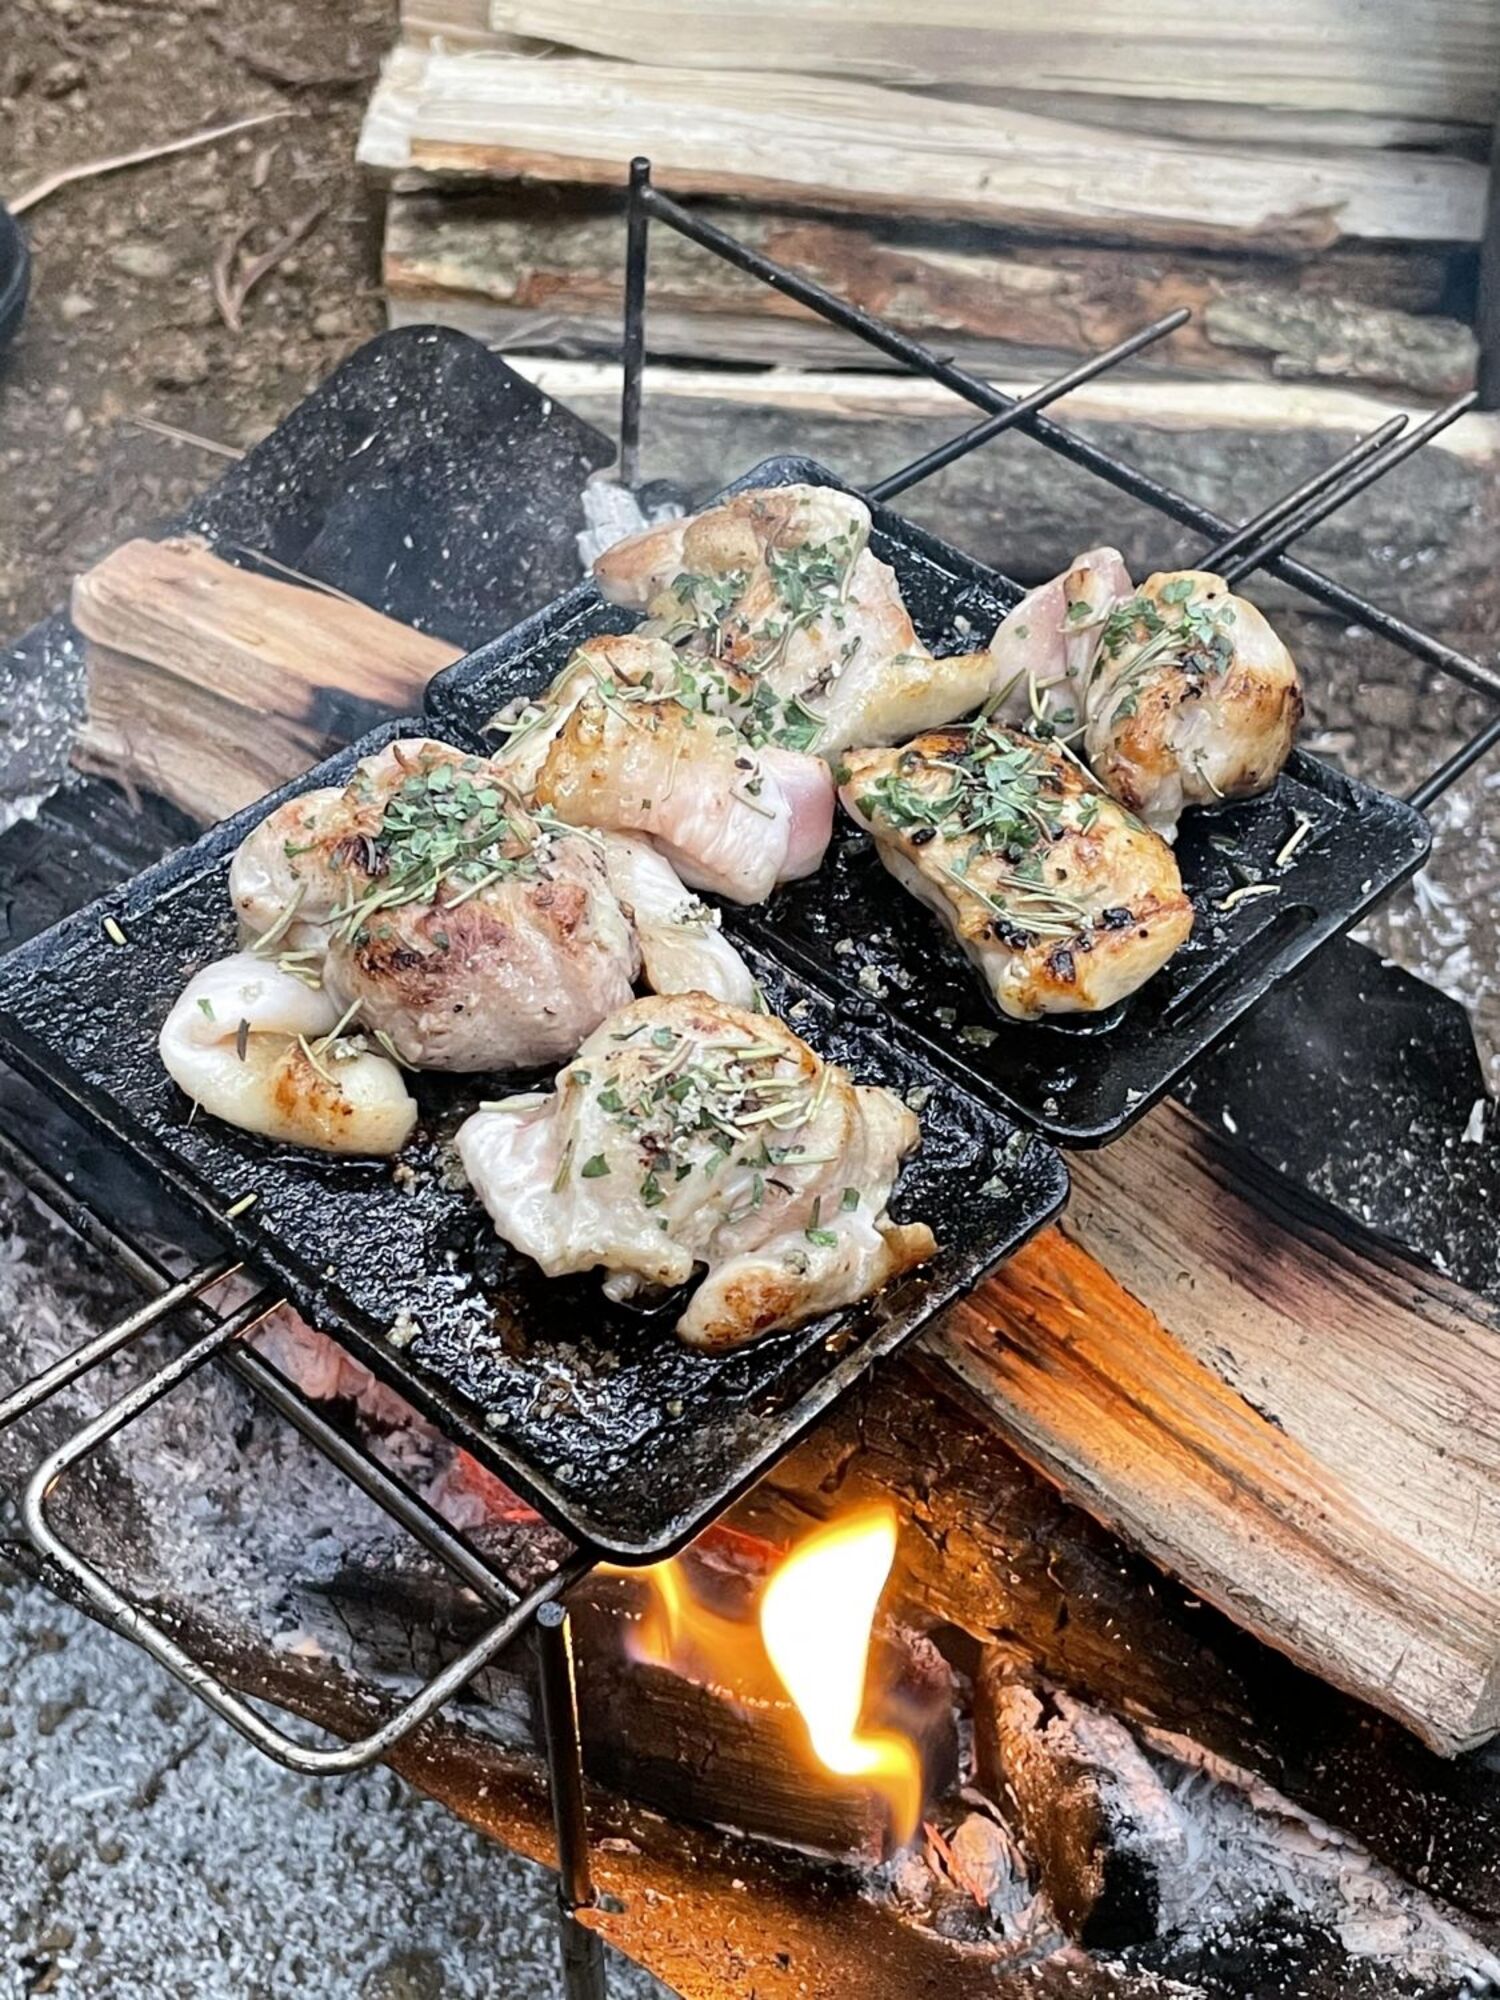 キャンプの楽しみは やっぱり肉 Be Pal読者の美味しそうなアウトドア肉料理10選 料理 レシピ Be Pal キャンプ アウトドア 自然派生活の情報源ビーパル